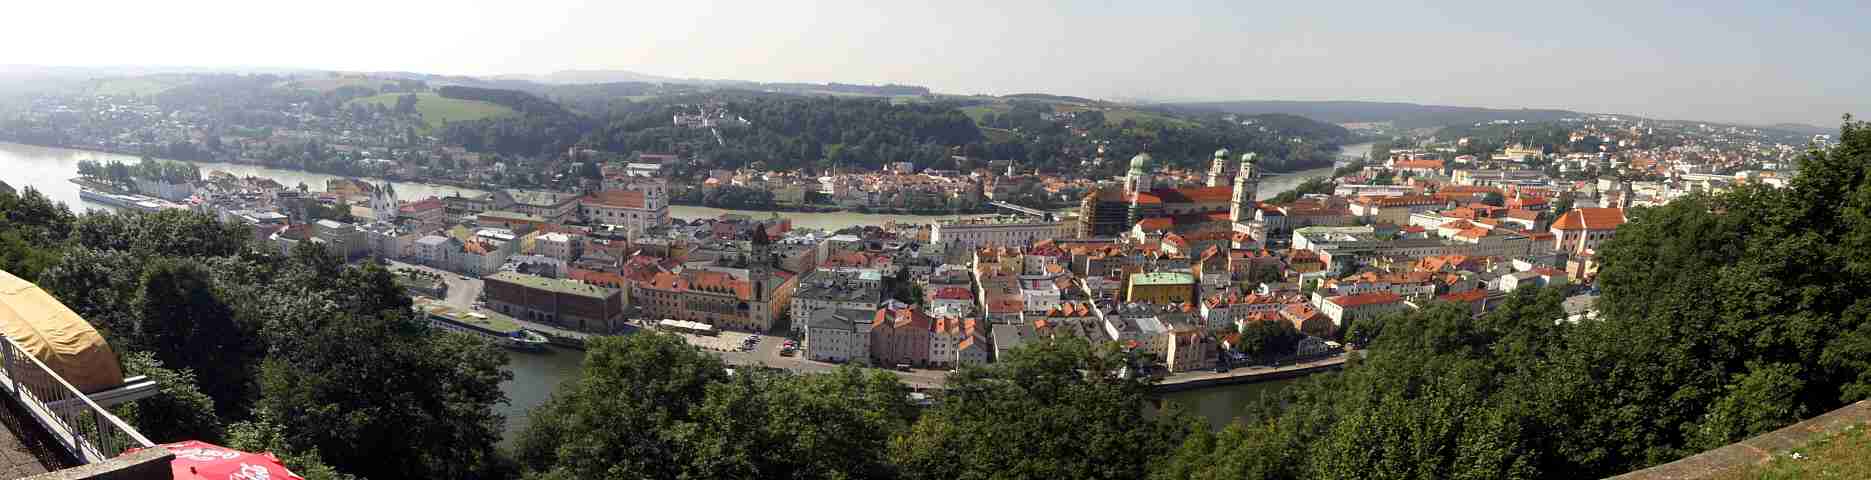 3_Passau_1_Panorama.jpg